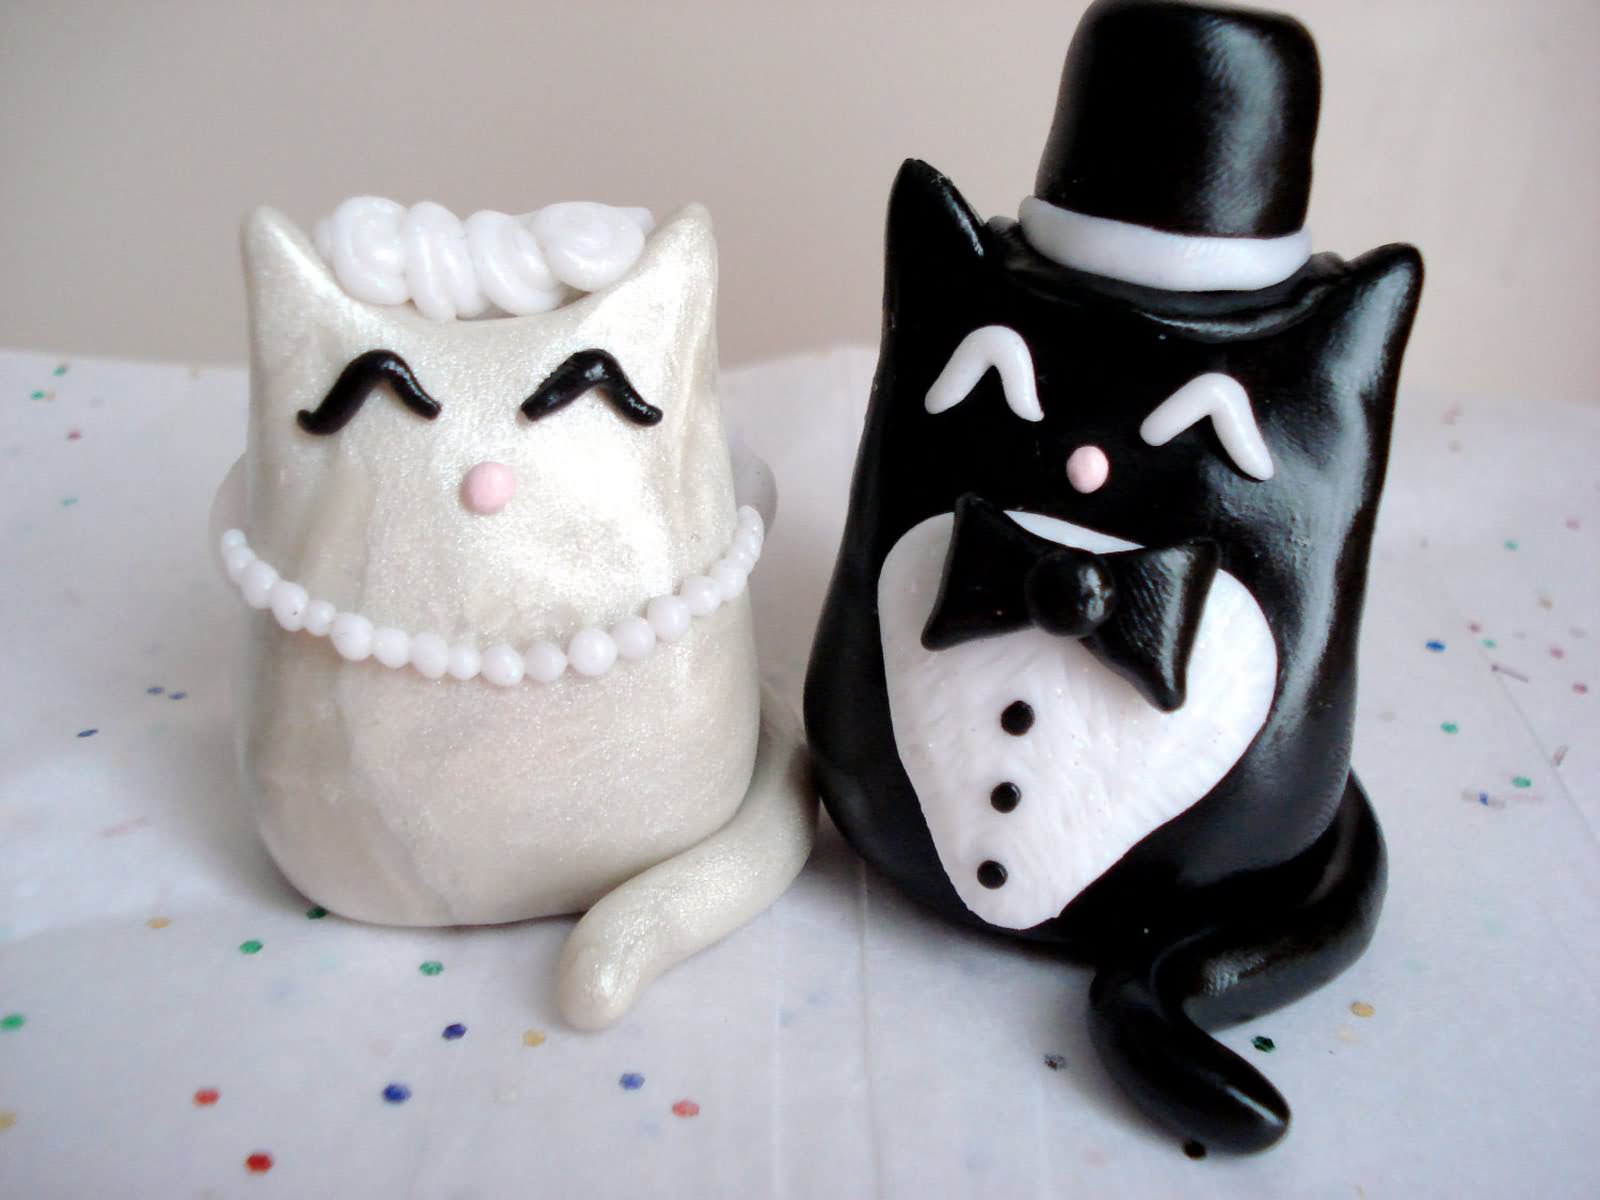 Funny Wedding Cake Cat Couple Image